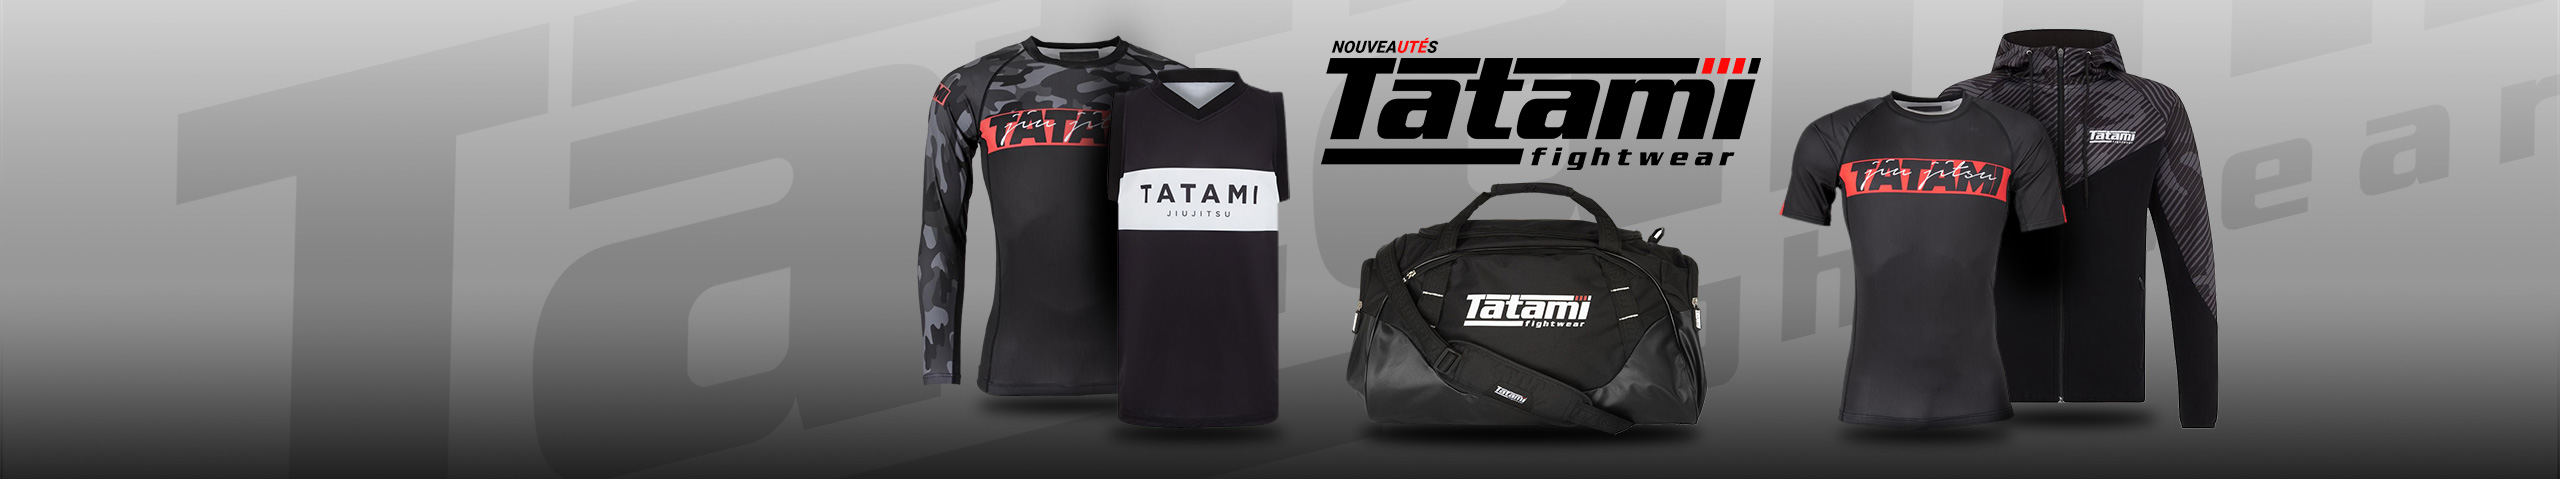 Tatami Fightwear : vêtements, équipements & accessoires de la marque Tatami Fightwear | Dragon Bleu